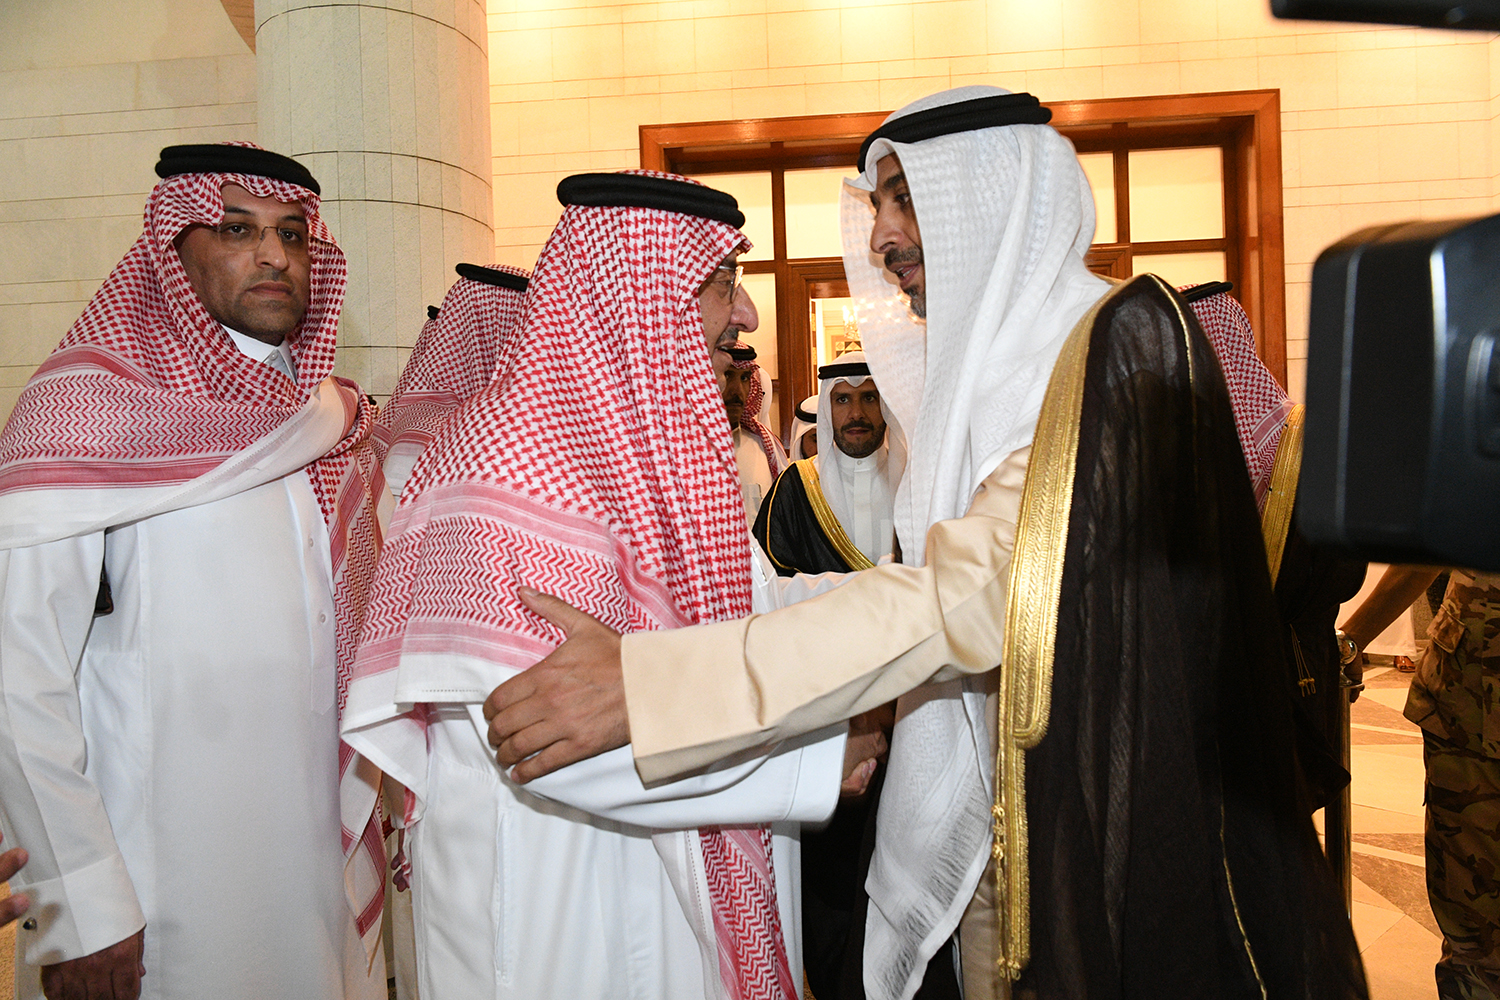 ممثل سمو الأمير يقدم واجب العزاء بوفاة الأميرة الجوهرة آل سعود